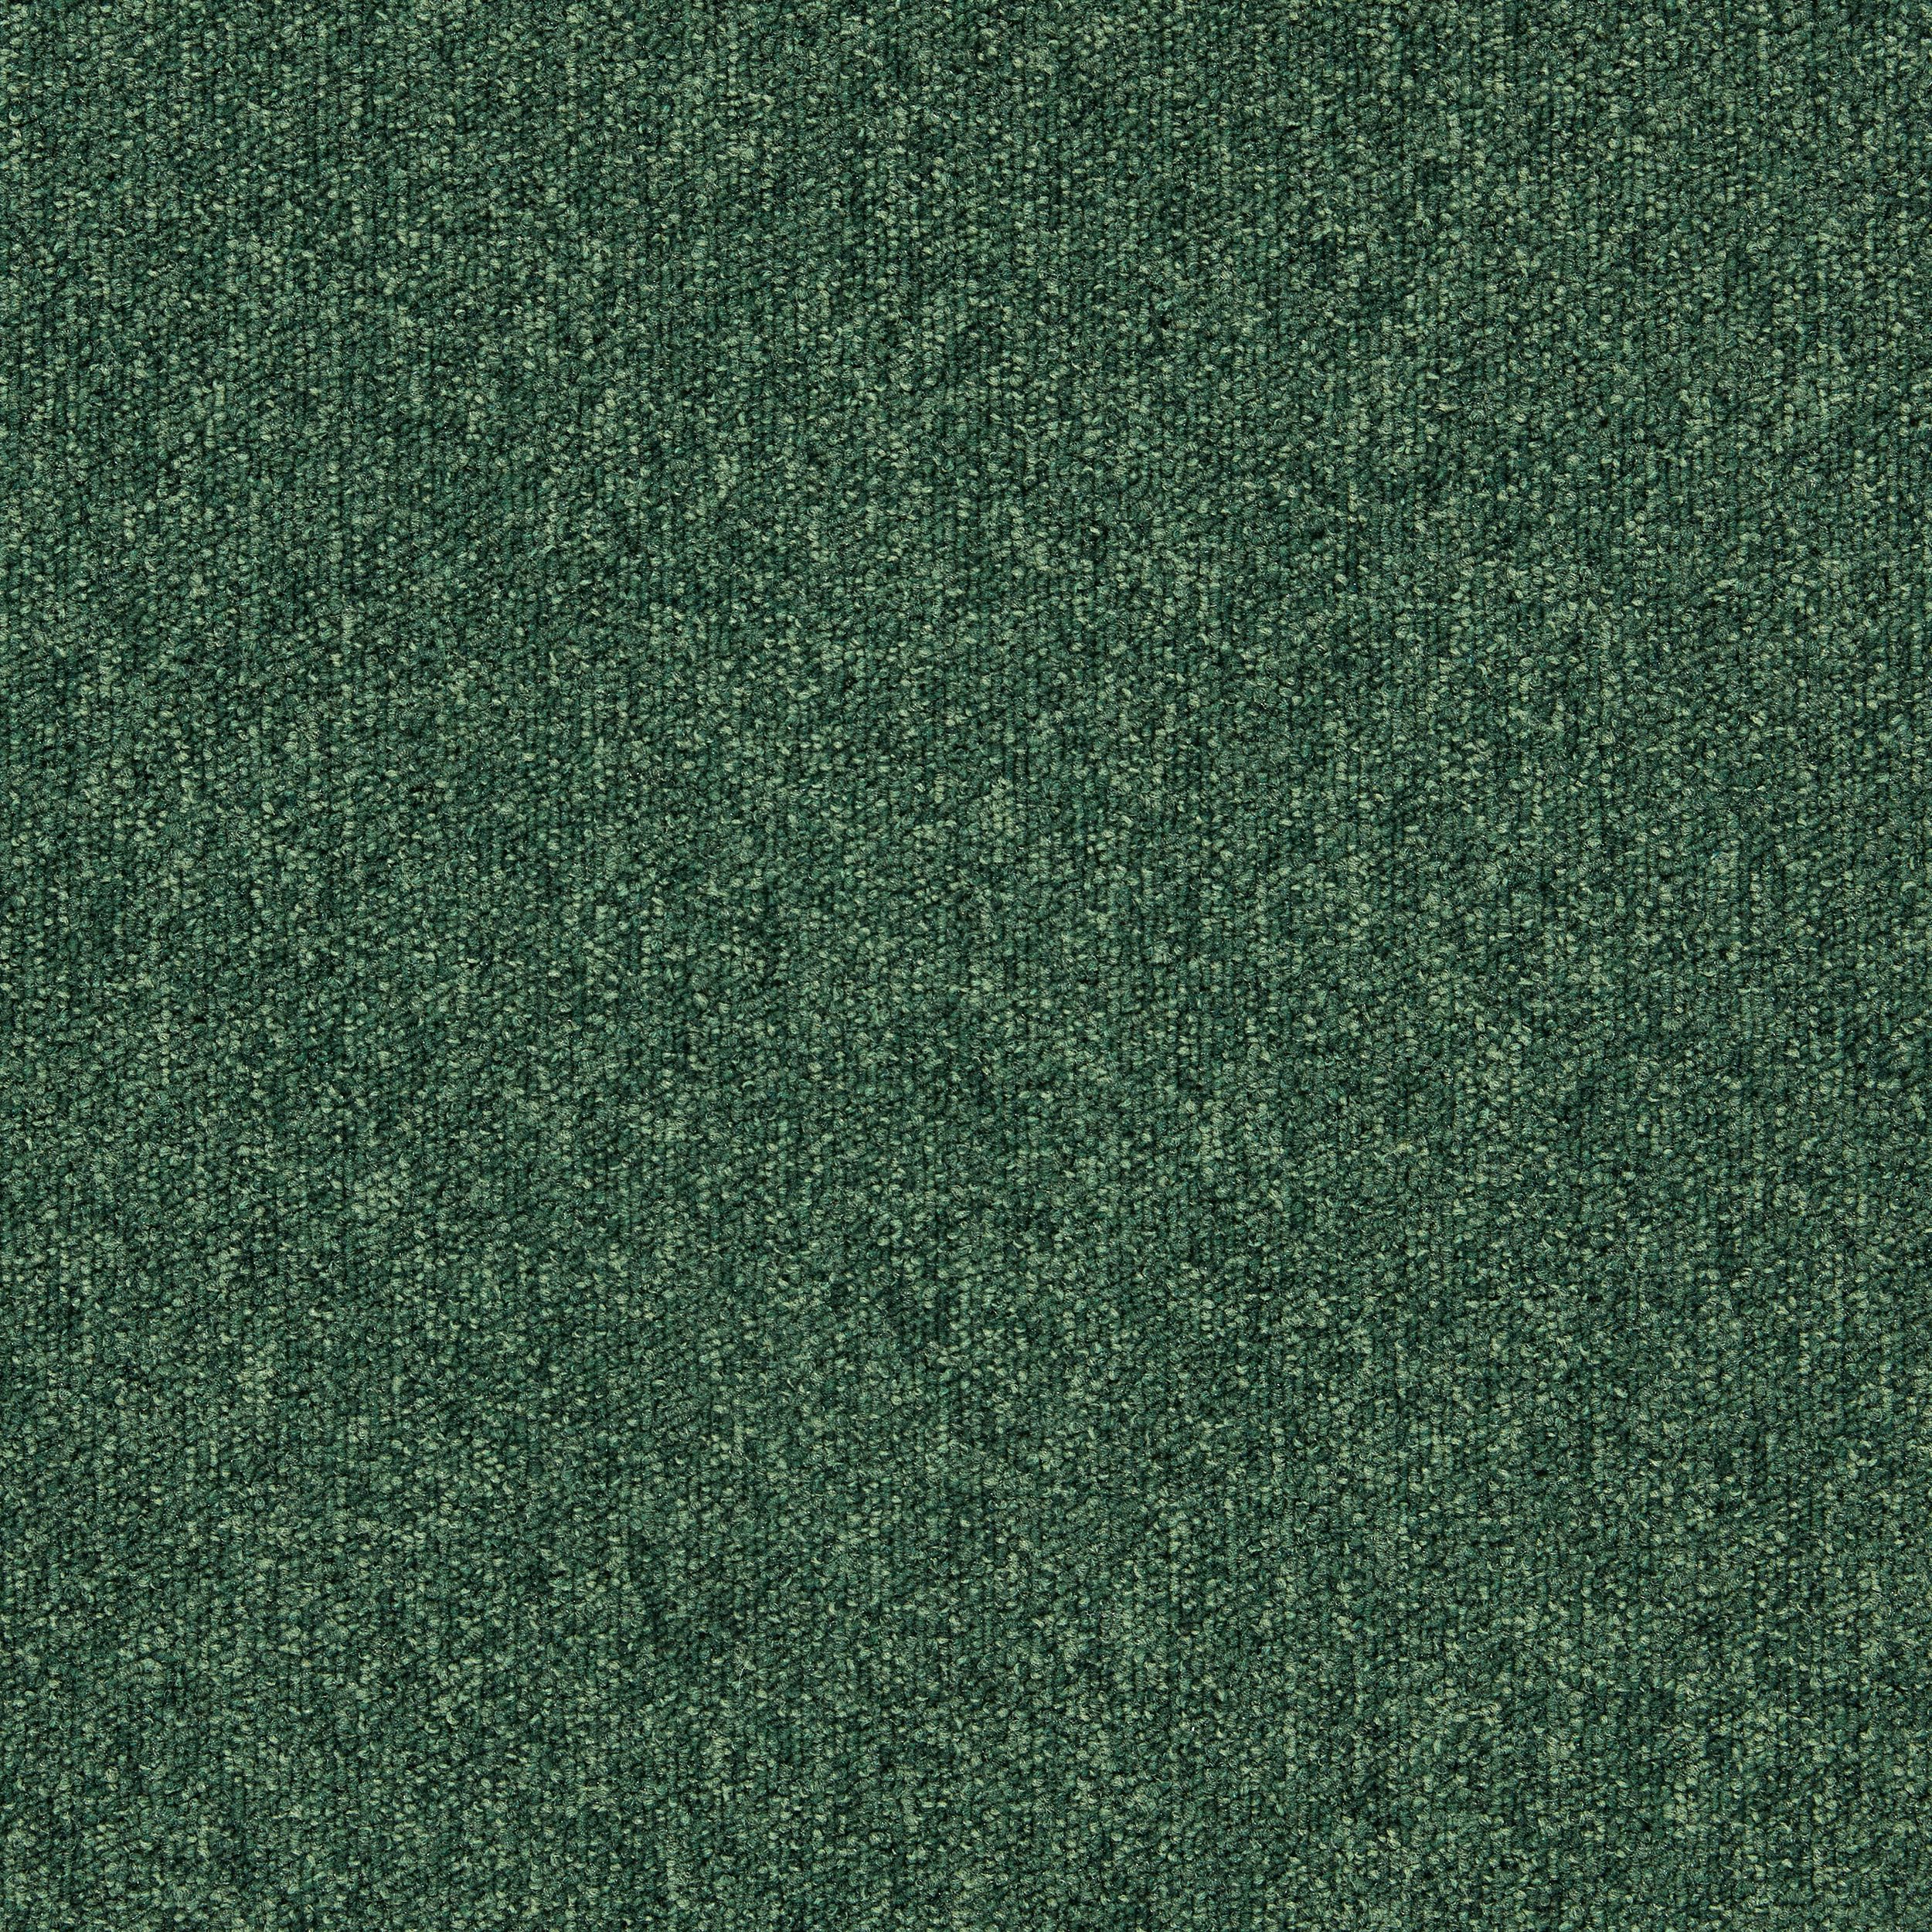 Heuga 727 Carpet Tile In Bottle Green afbeeldingnummer 6